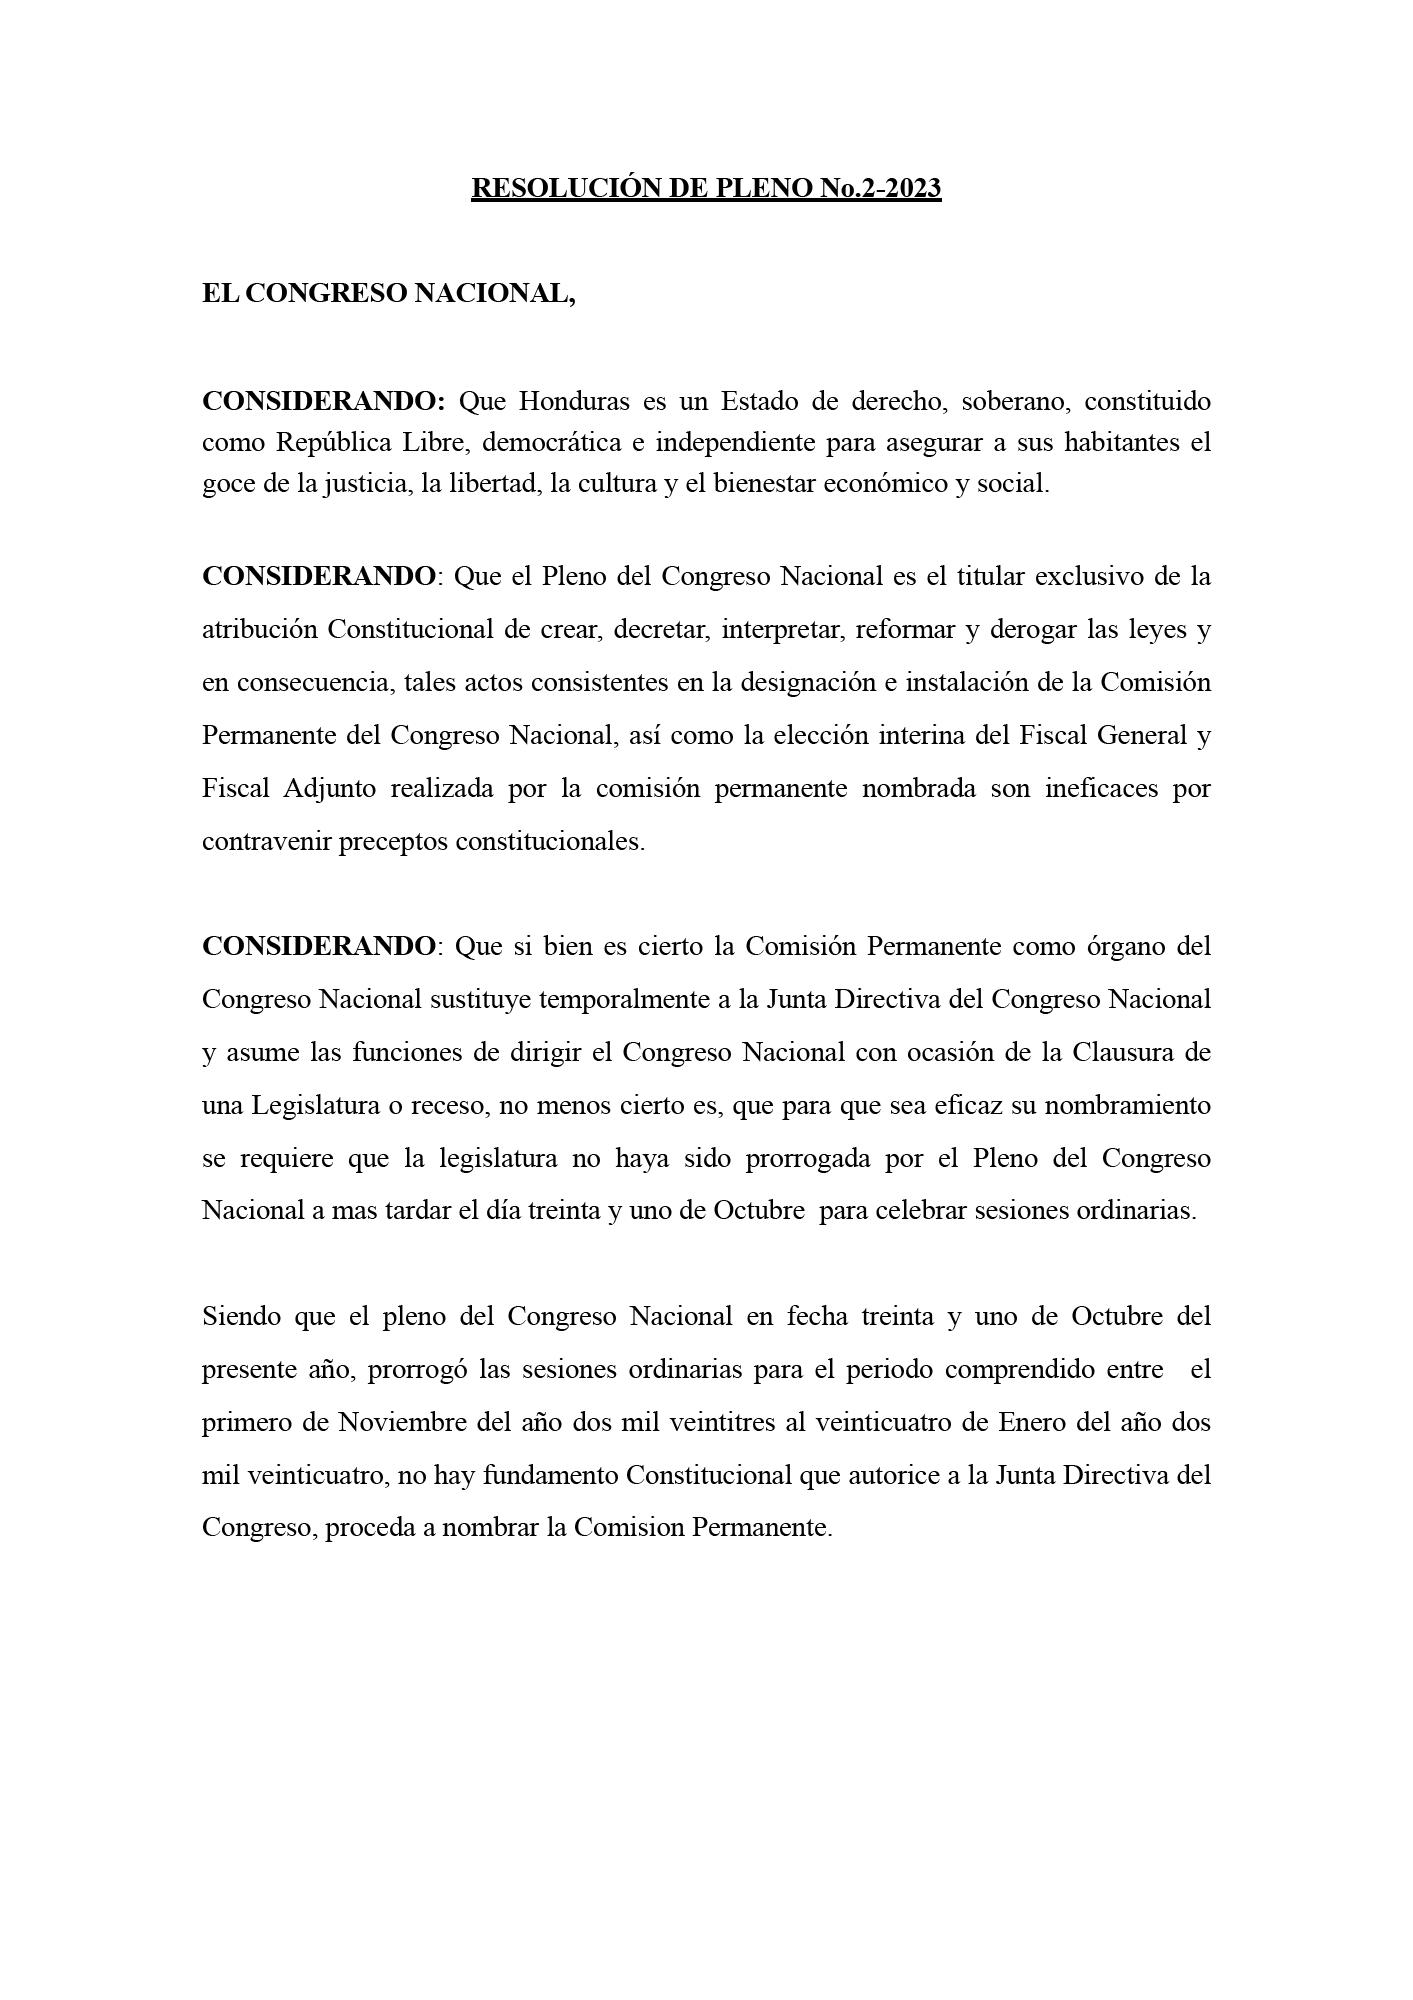 Resolución de Pleno 1-2023 que deja sin valor y efecto elección interina de Johel Zelaya como Fiscal General y Mario Morazán como Fiscal Adjunto